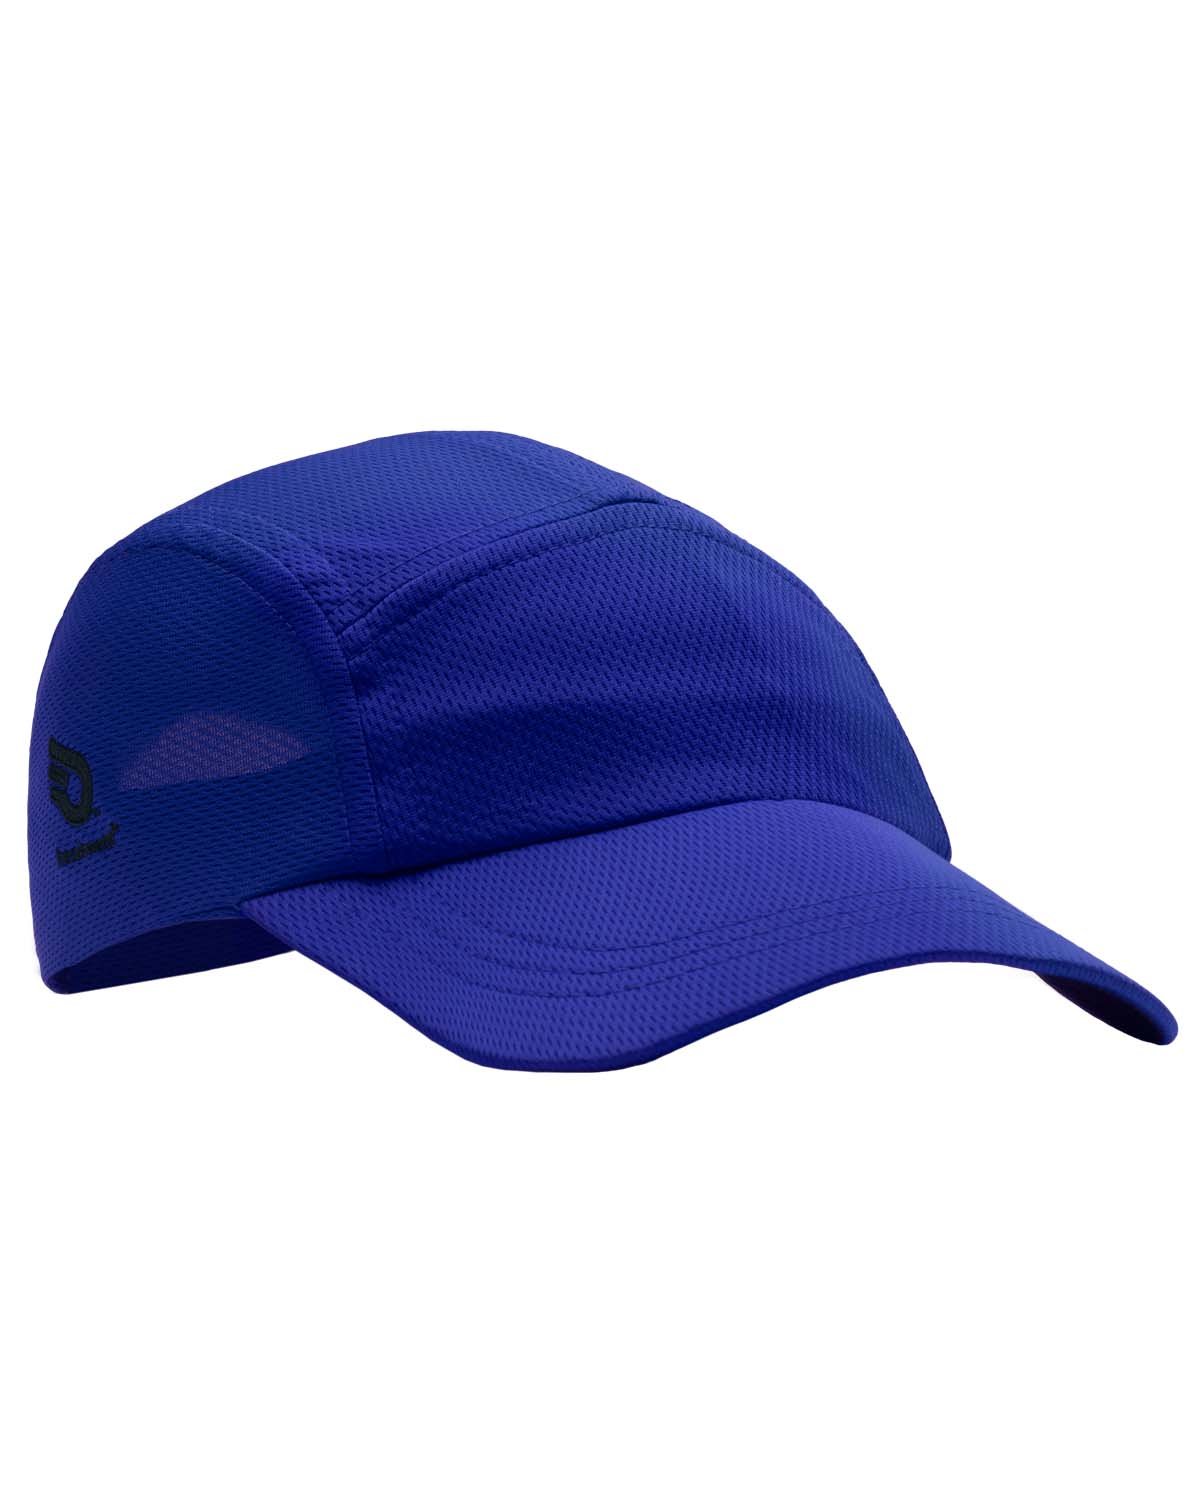 Headsweats - Adult Race Hat